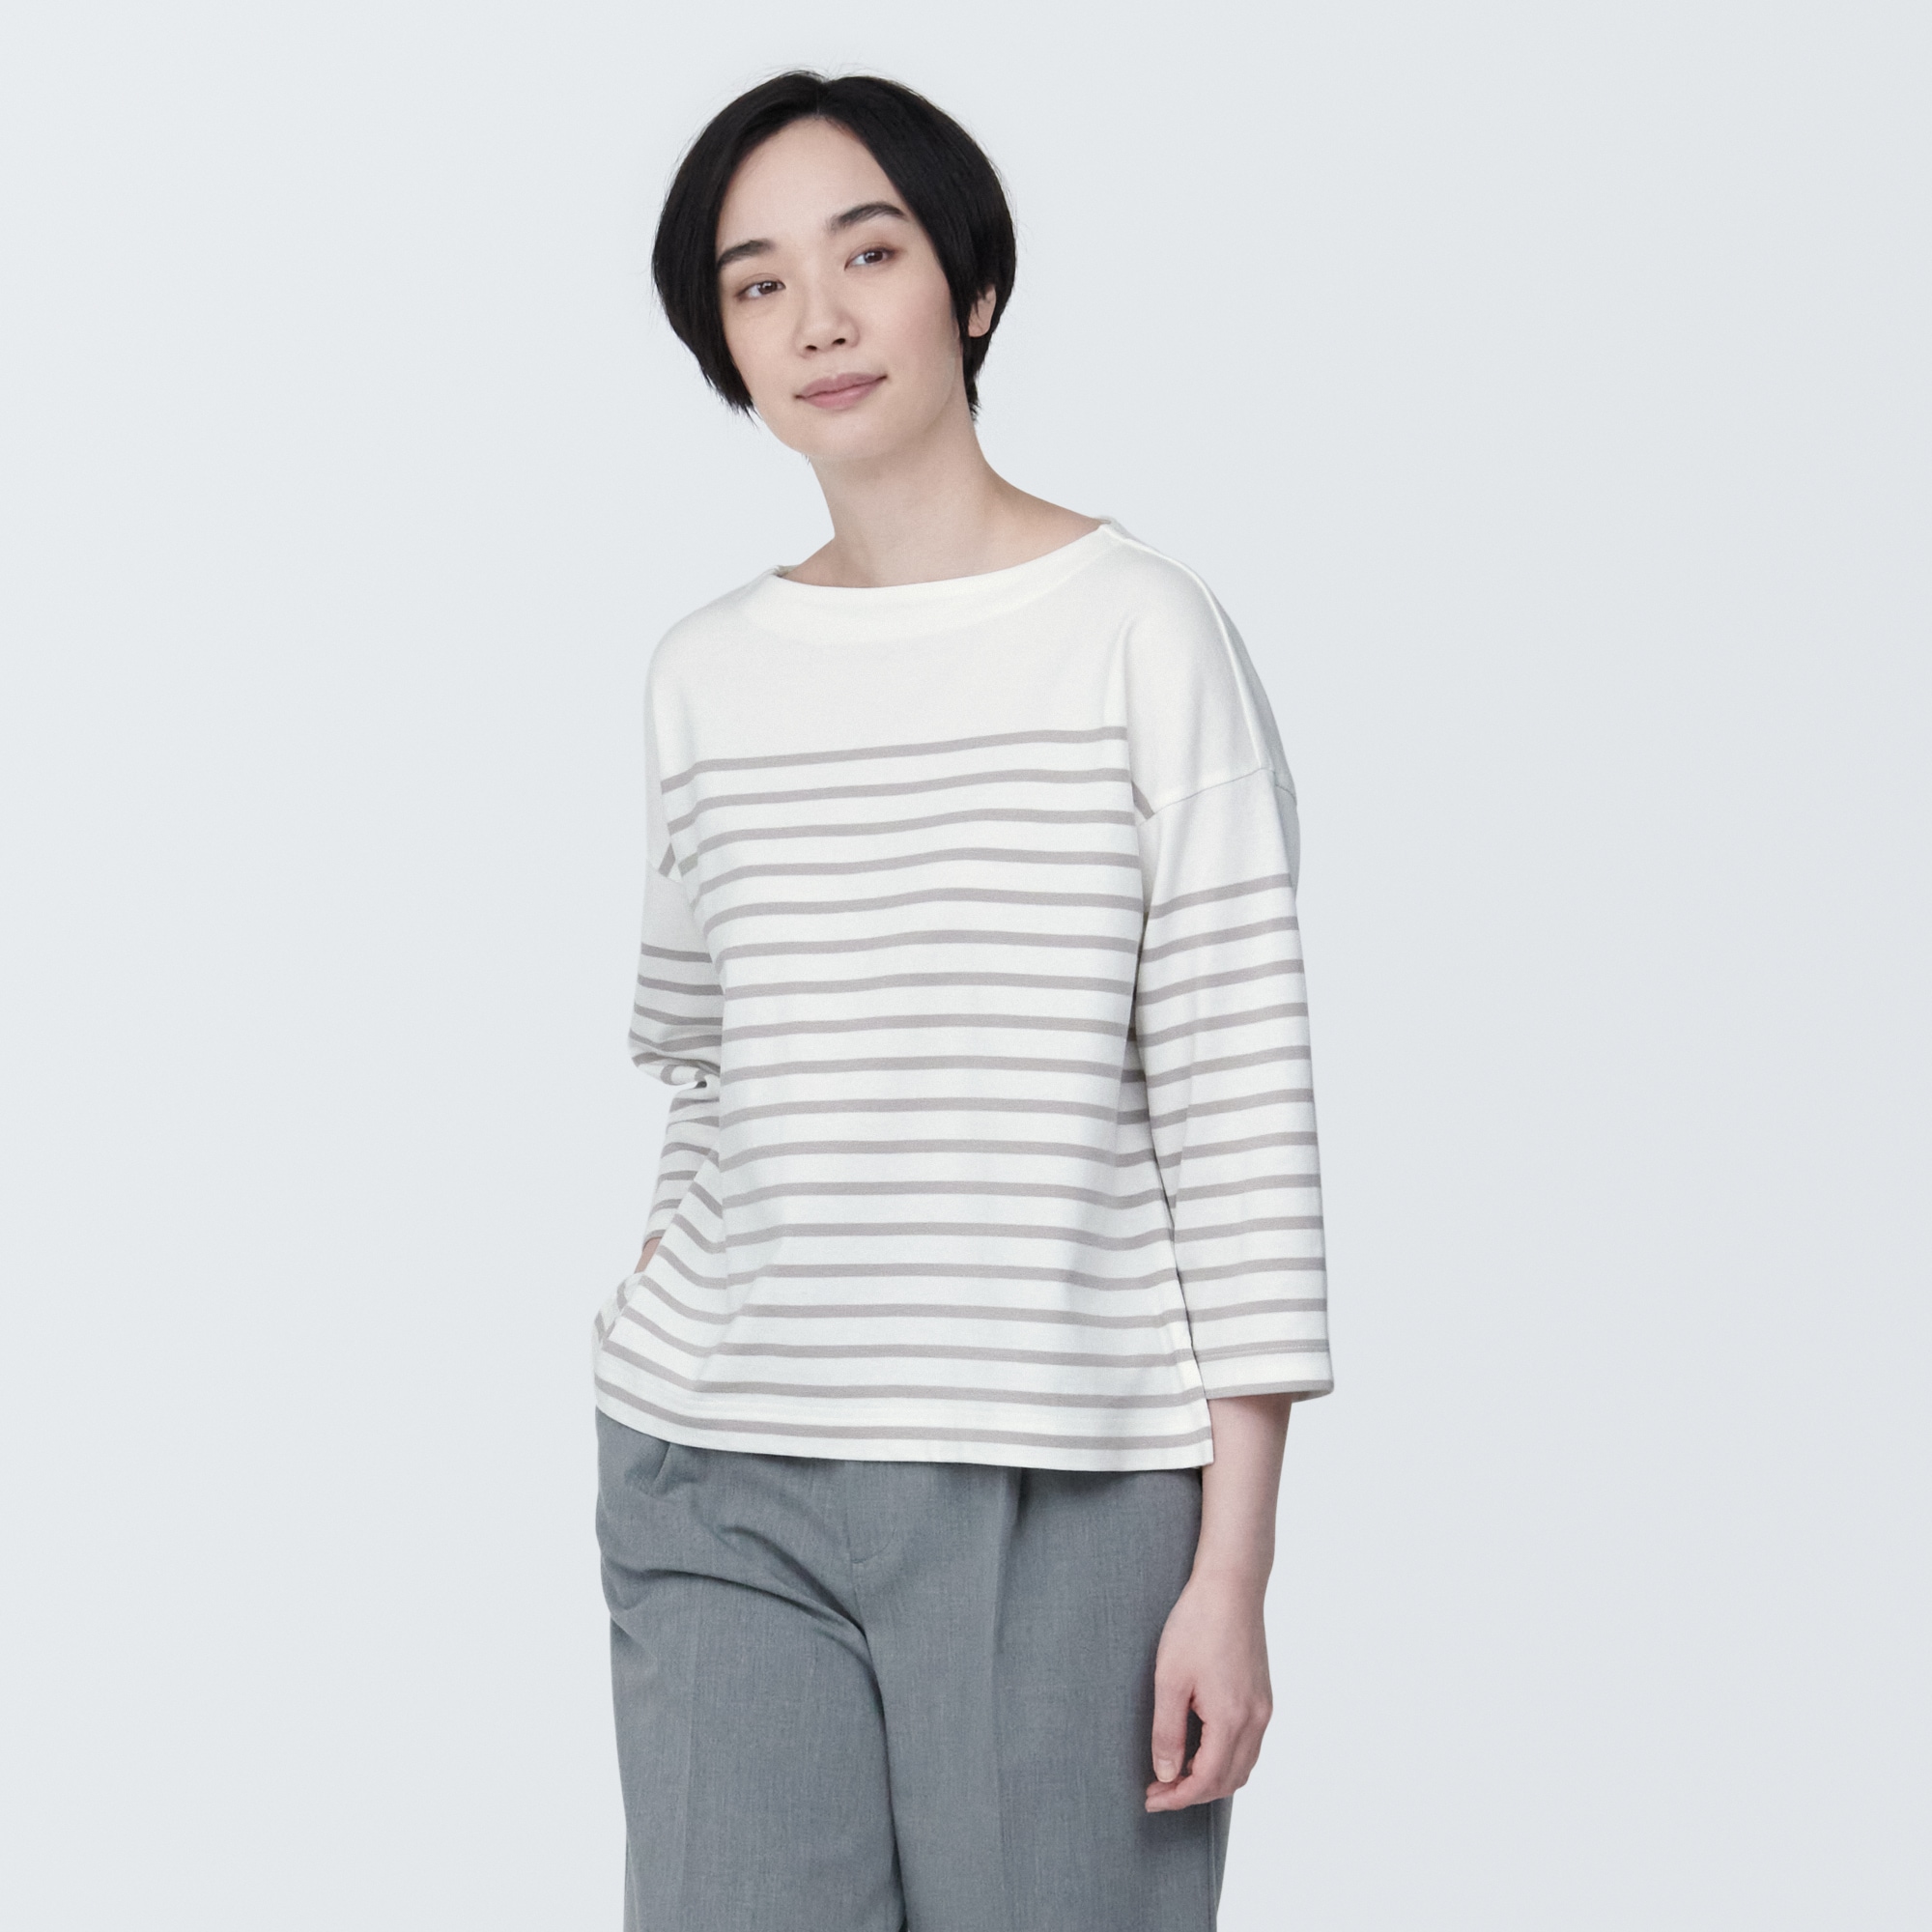 무인양품 일본 여성 보더 보트 넥7부 소매티셔츠